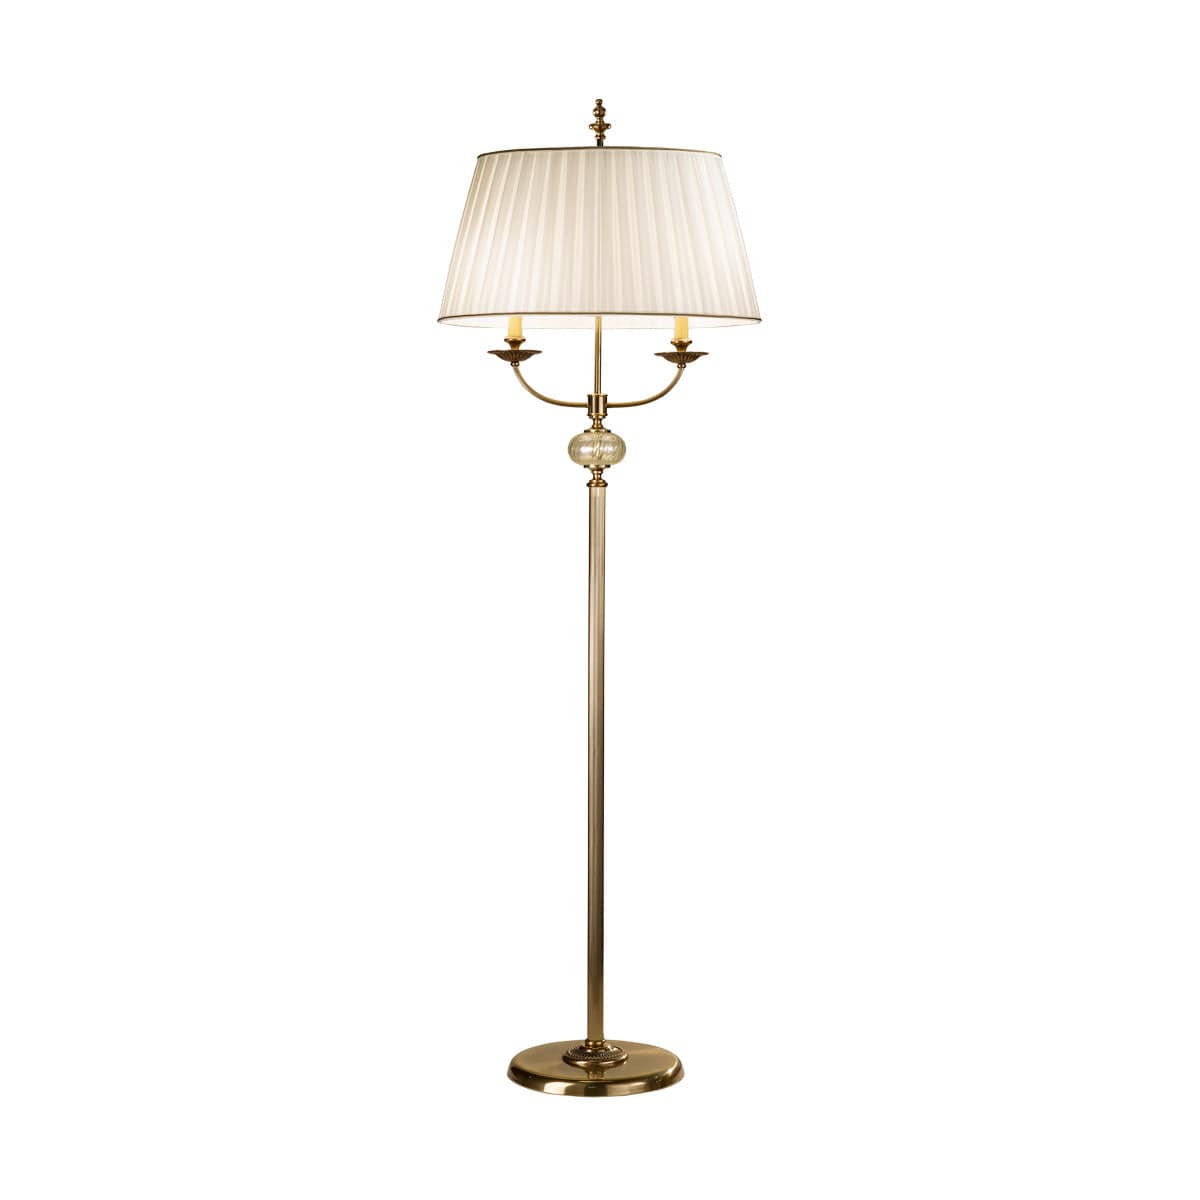 Kolarz Floor Lamp Ascot Floor Lamp, Antique Brass